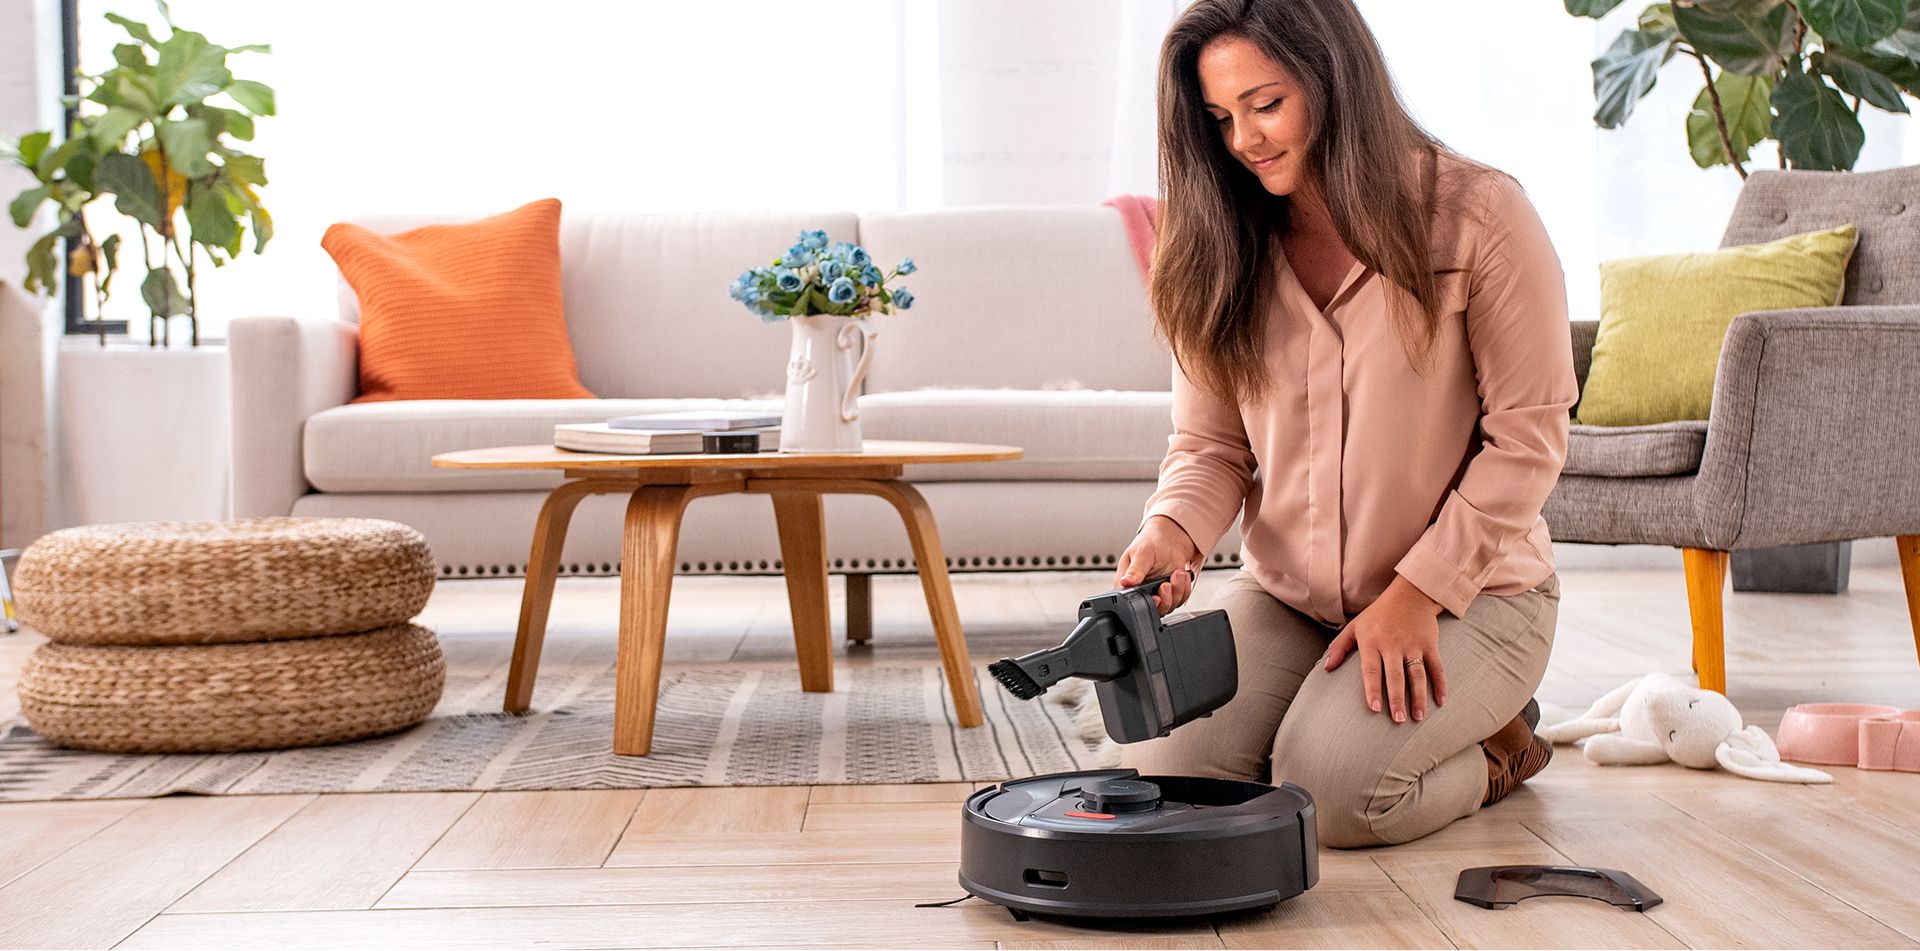 HiaerTAB Tabot Robot Vacuum/mop